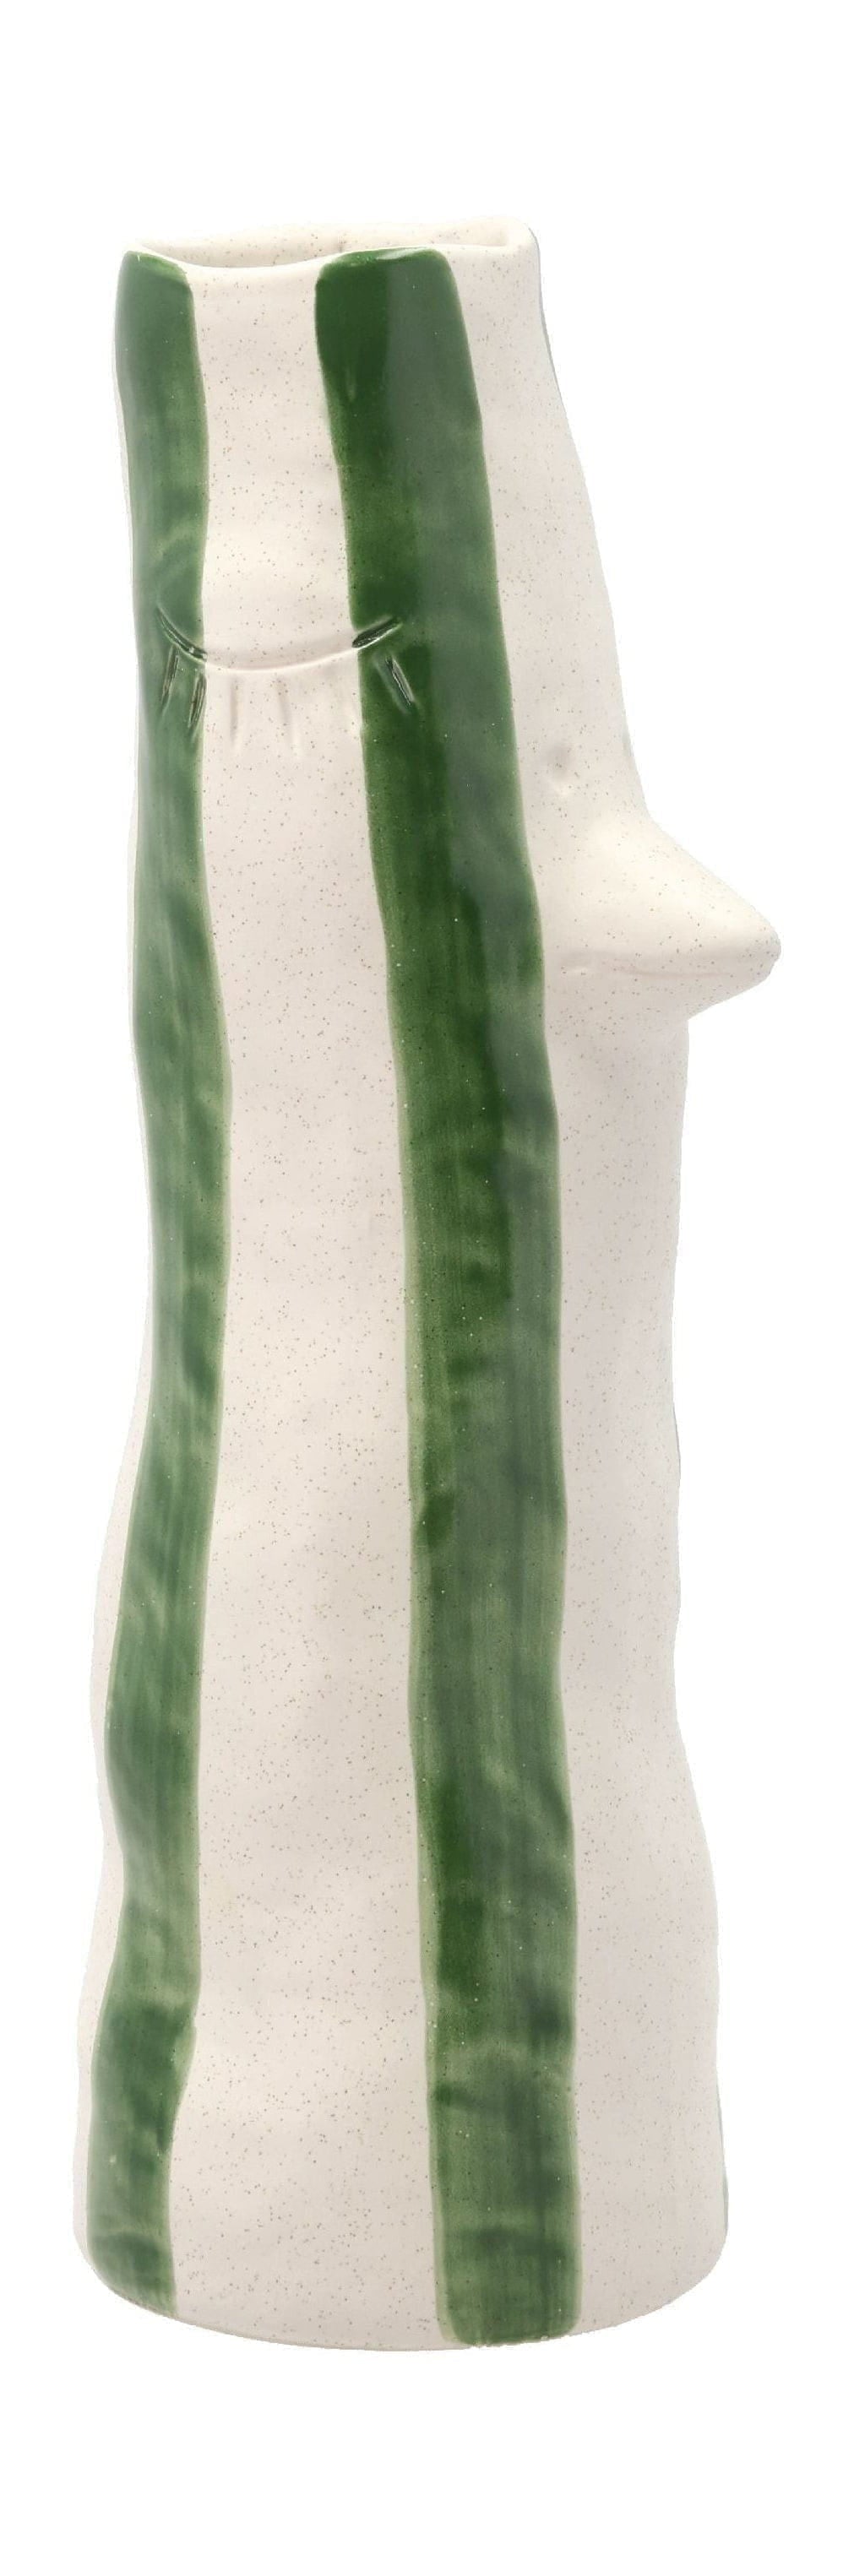 Villa Collection Styles váza s zobákem a řasy velký, zelená